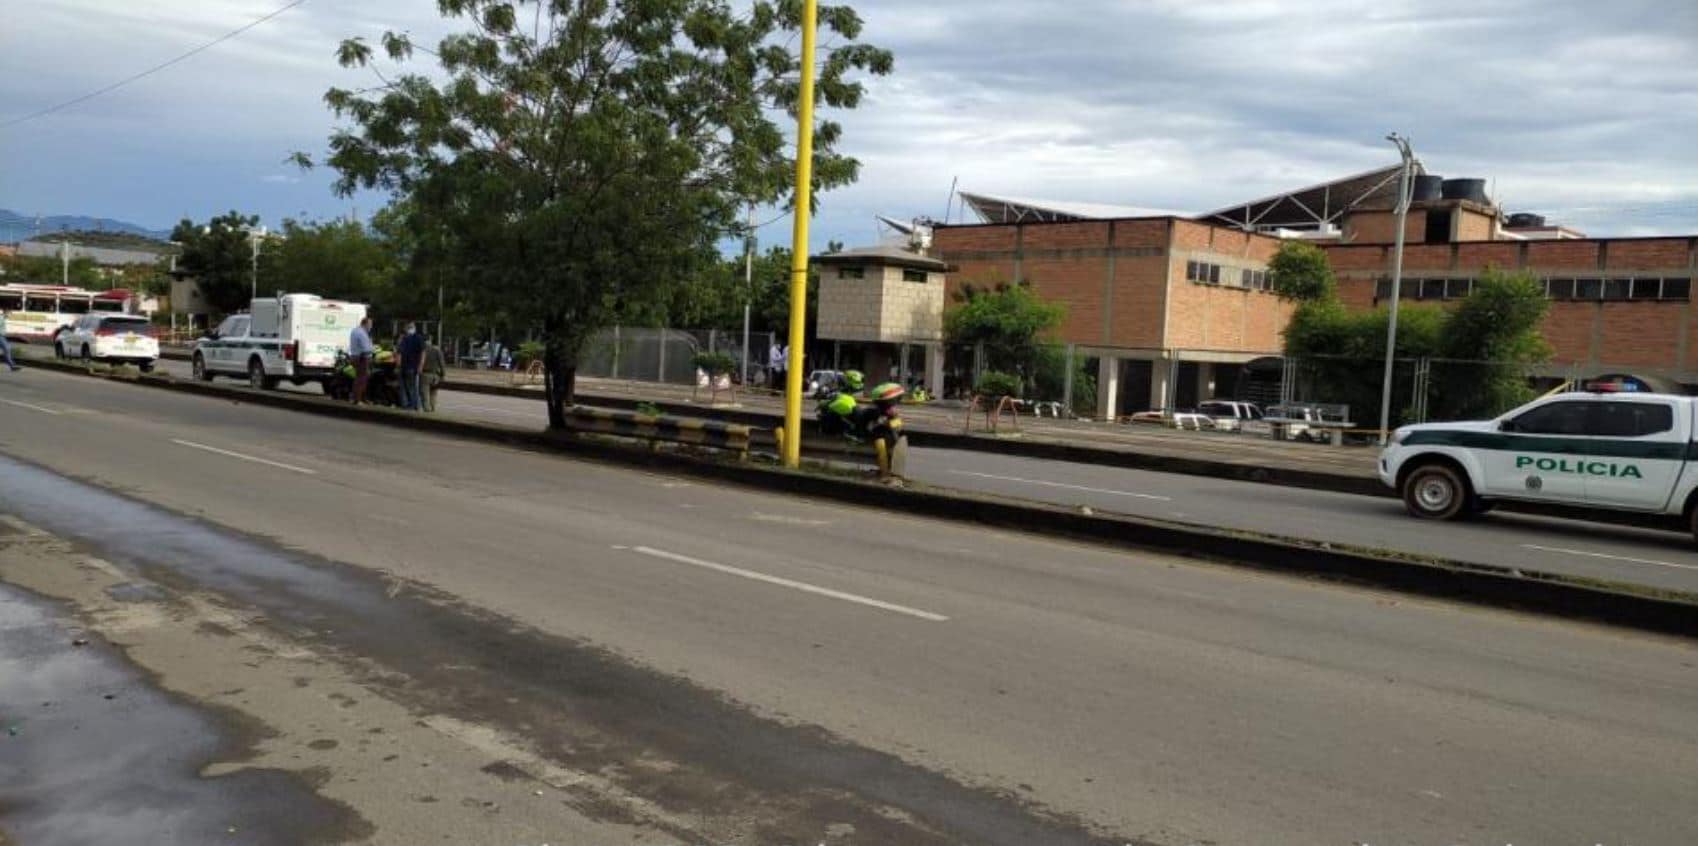 ELN podría estar involucrado en el más reciente atentado en Cúcuta